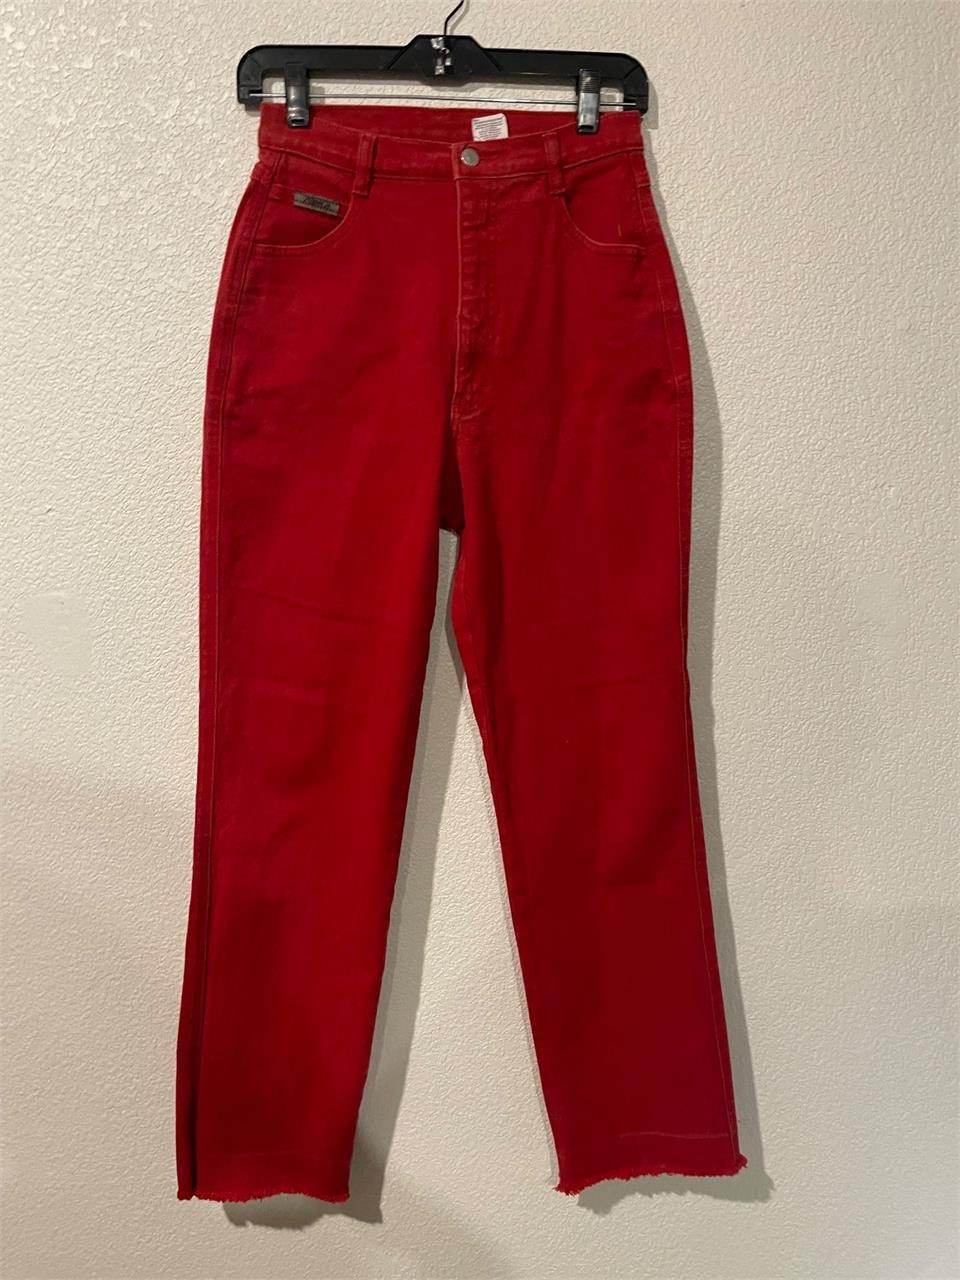 Vintage Red Wrangler Jeans Femme